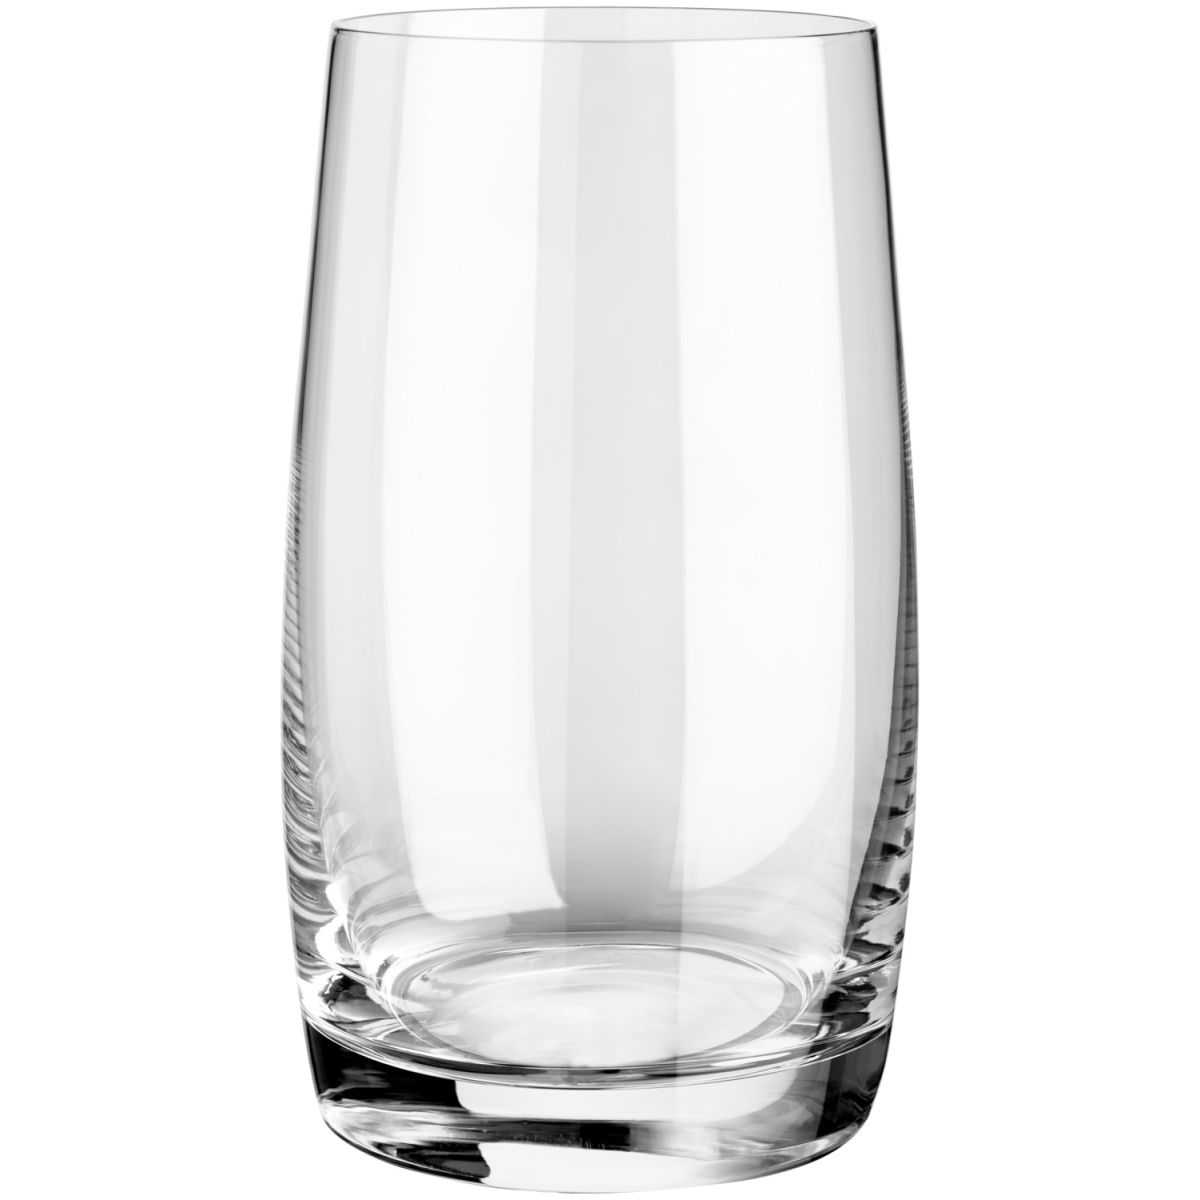 Vega Universeel glas Erika; 380ml, 6.5x13 cm (ØxH); transparant; 6 stuk / verpakking